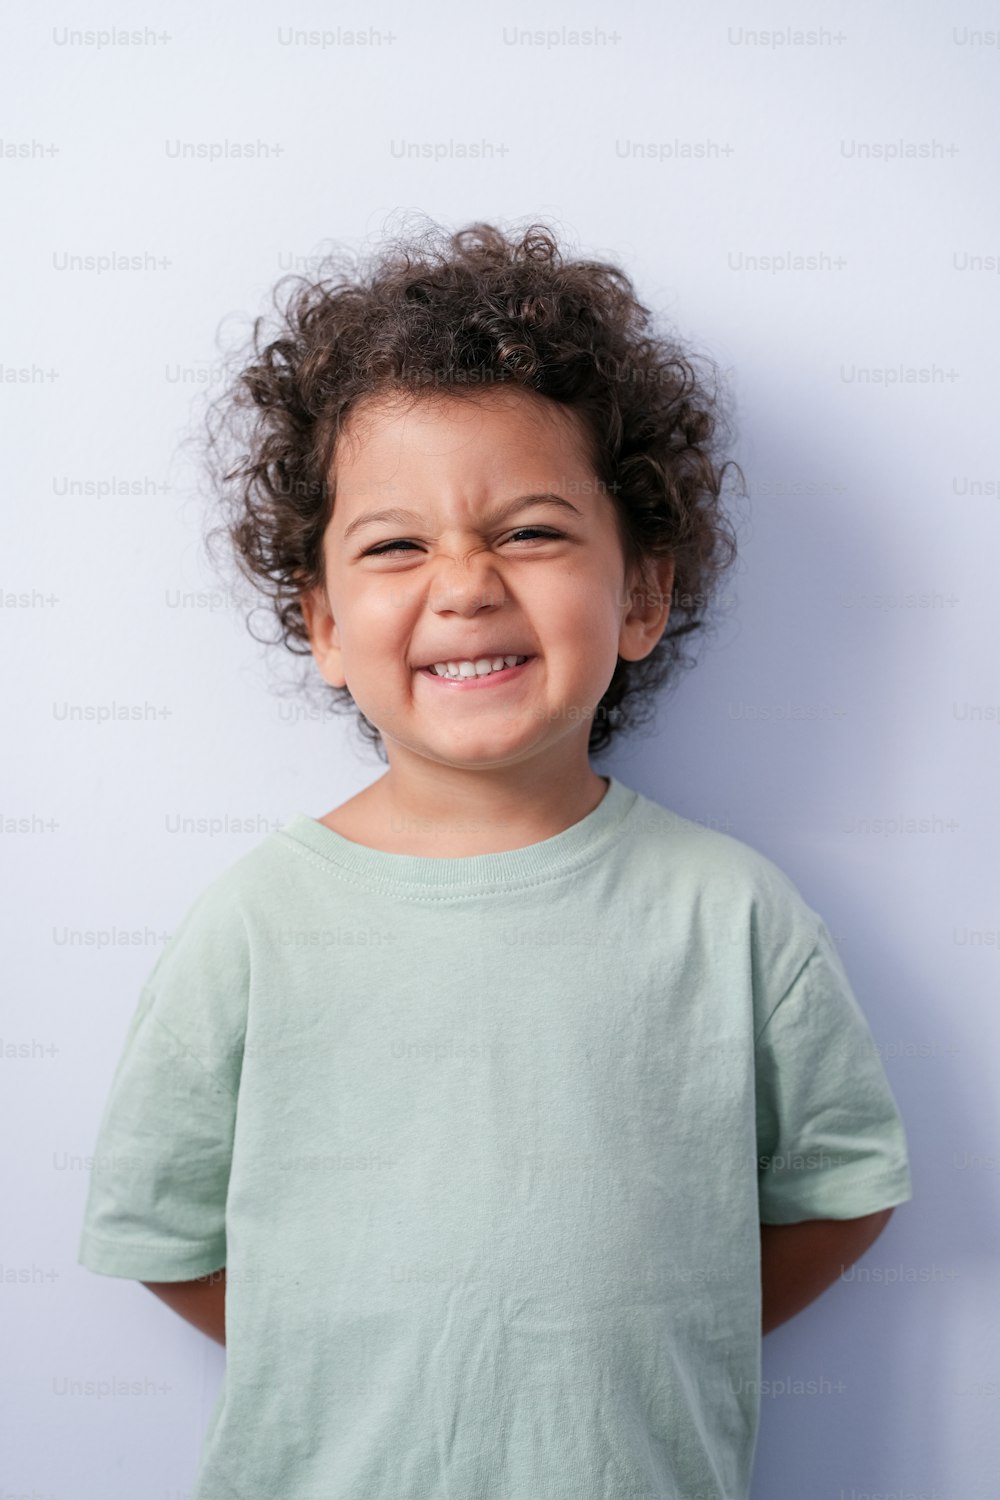 Uma criança pequena com cabelo cacheado está sorrindo